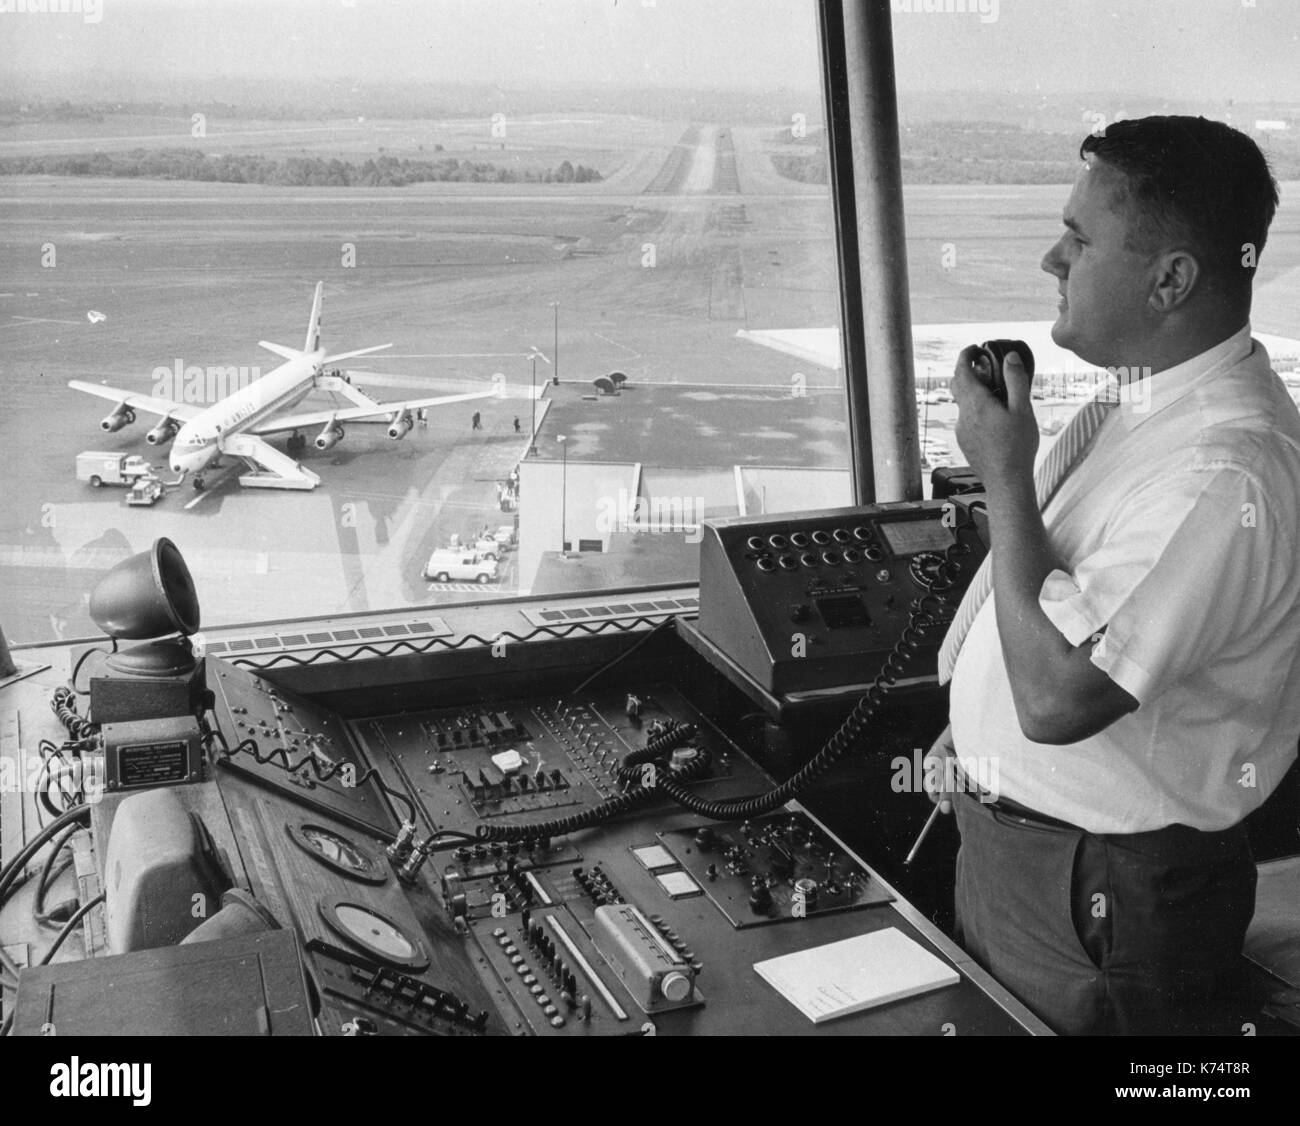 Ein Federal Aviation Agency (FAA) Air Traffic Controller führt eine Ebene zu einer sicheren Landung, 1965. Stockfoto